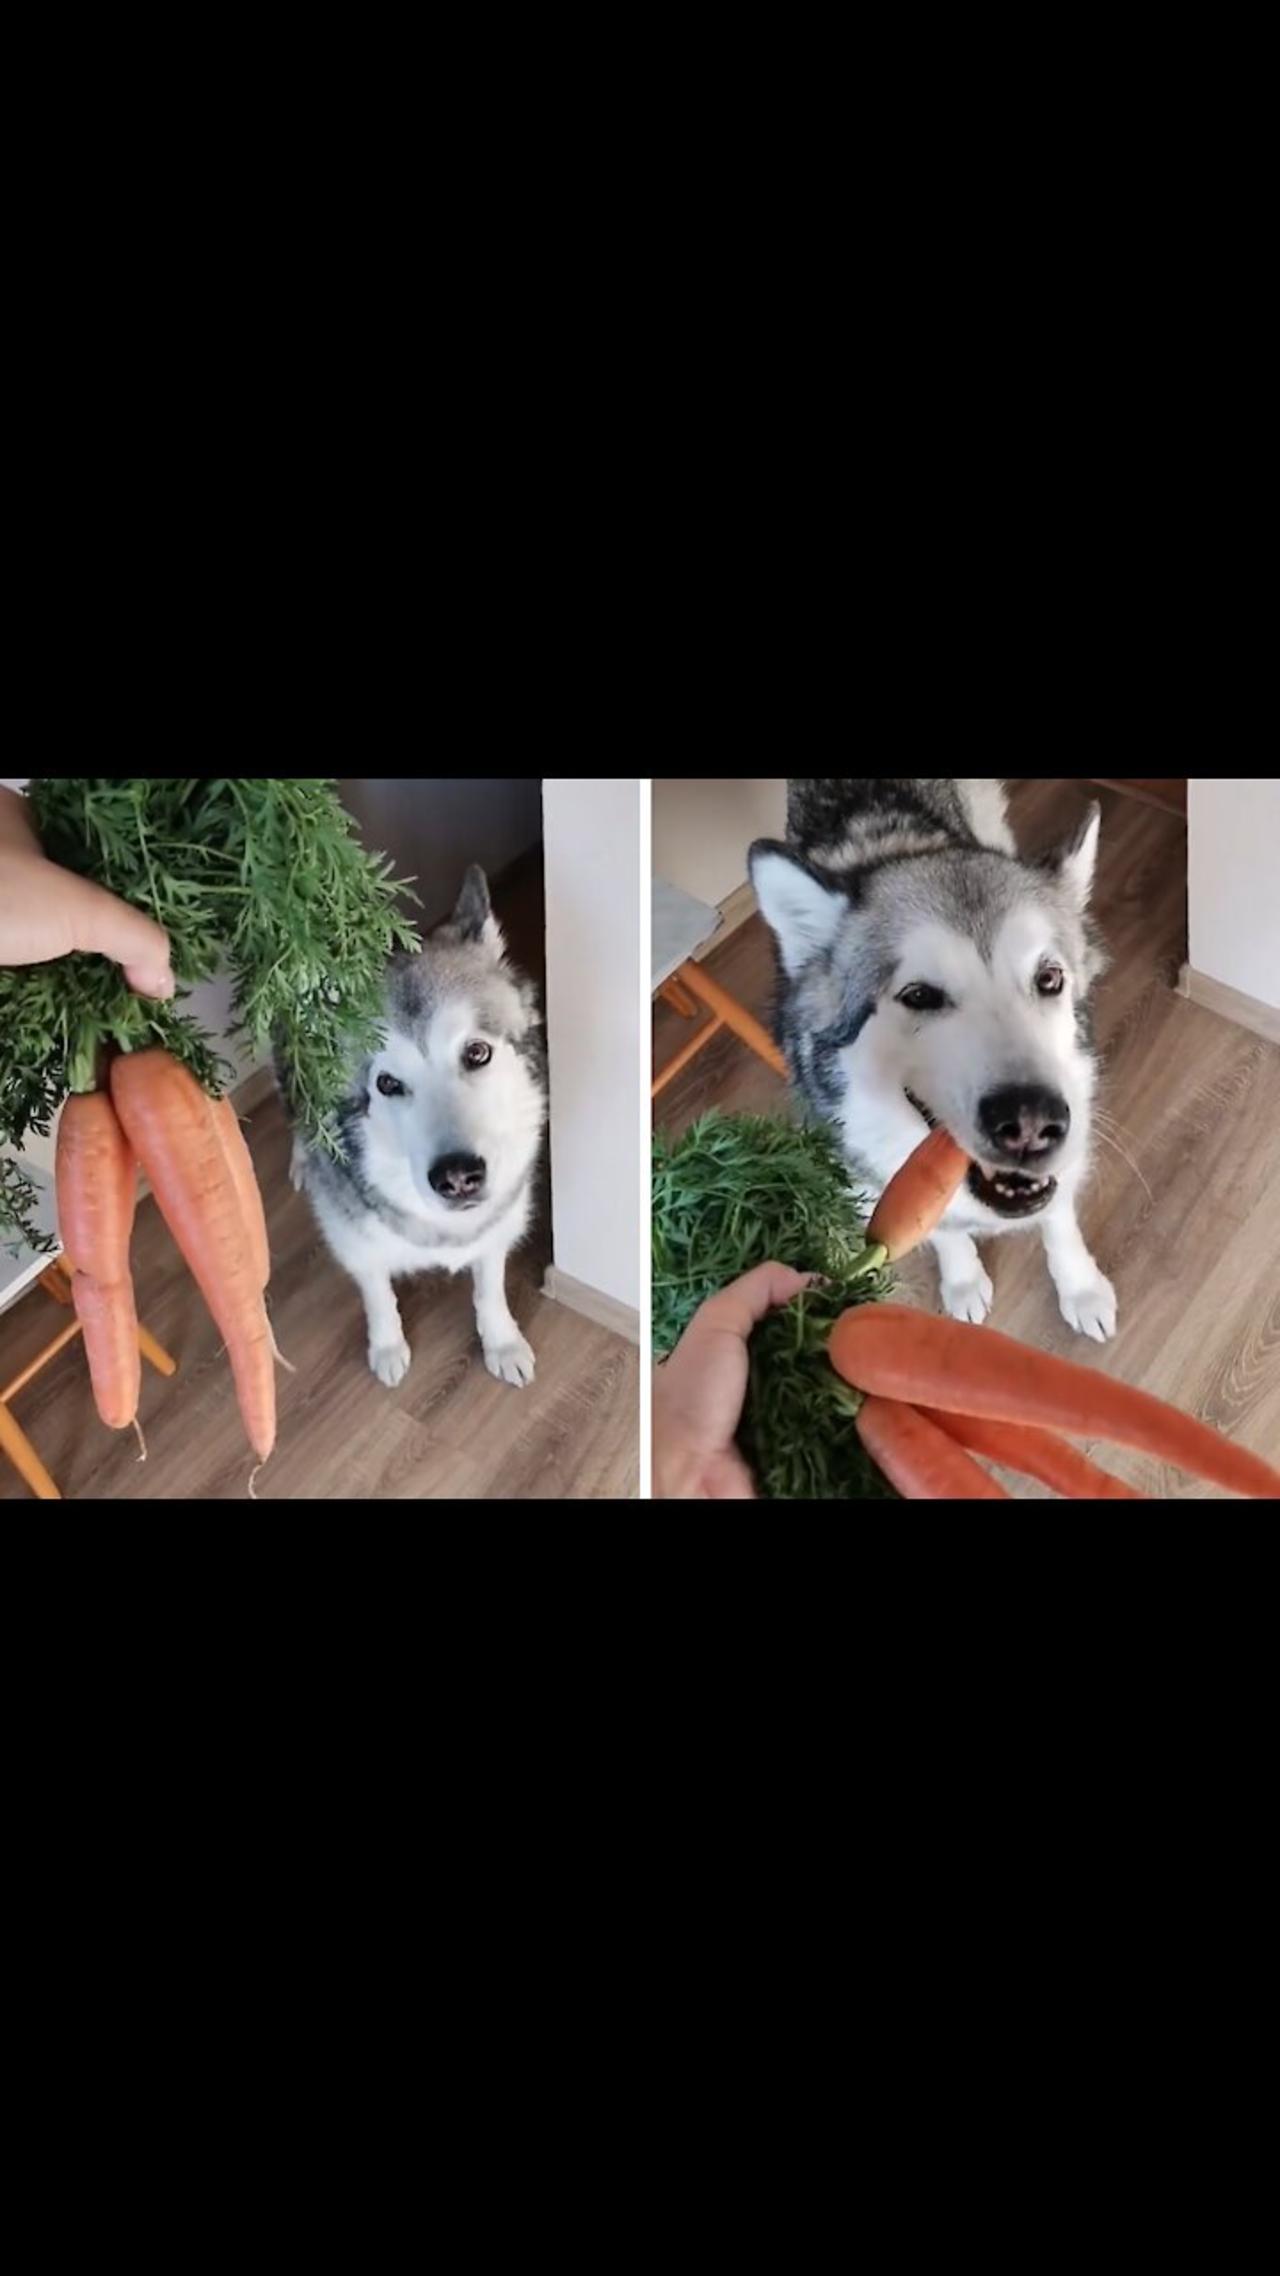 Healthy husky loves munching on fresh carrots